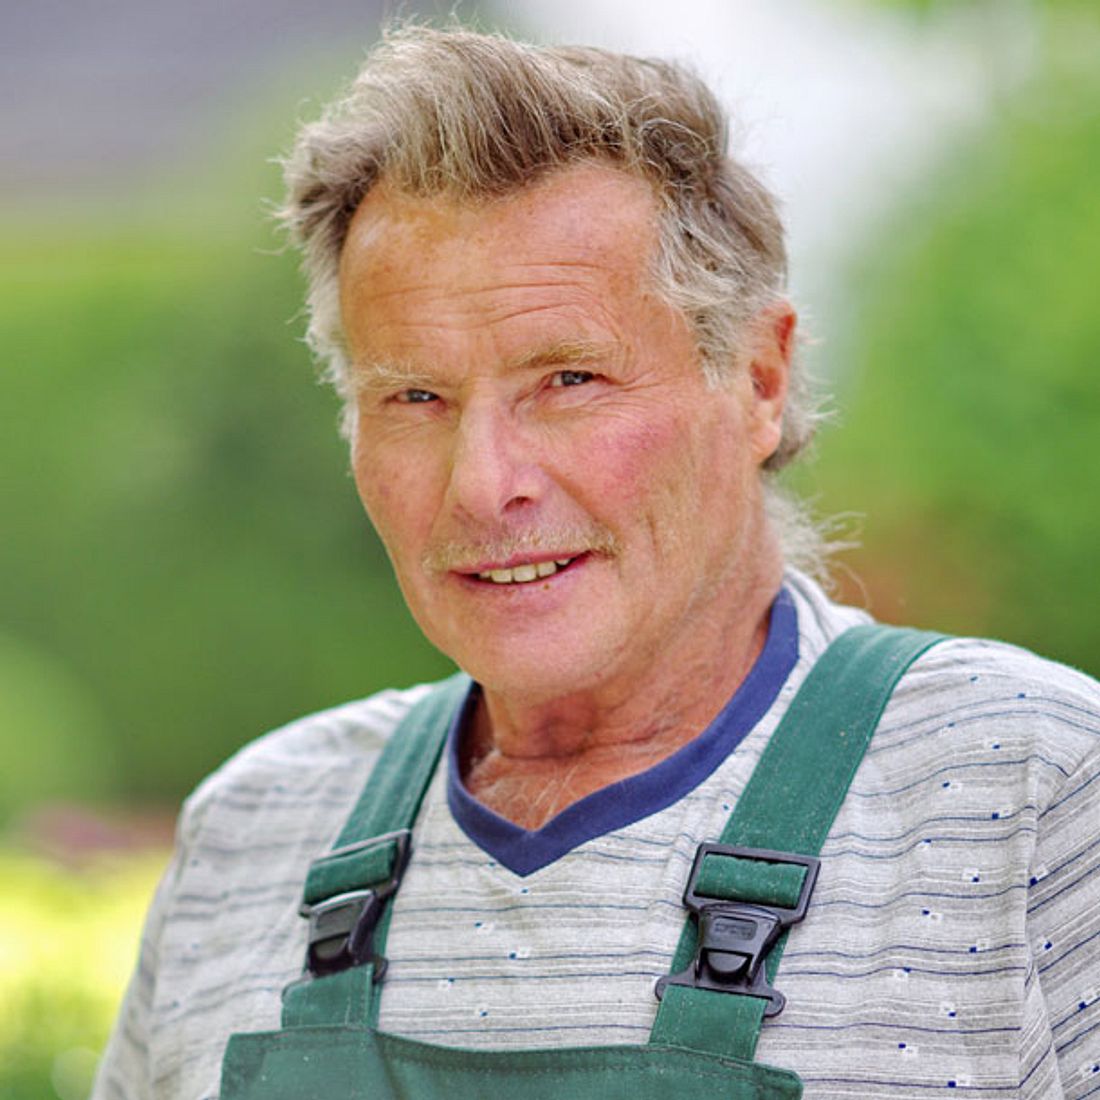 Gerhard ist der älteste Bauer sucht Frau-Kandidat